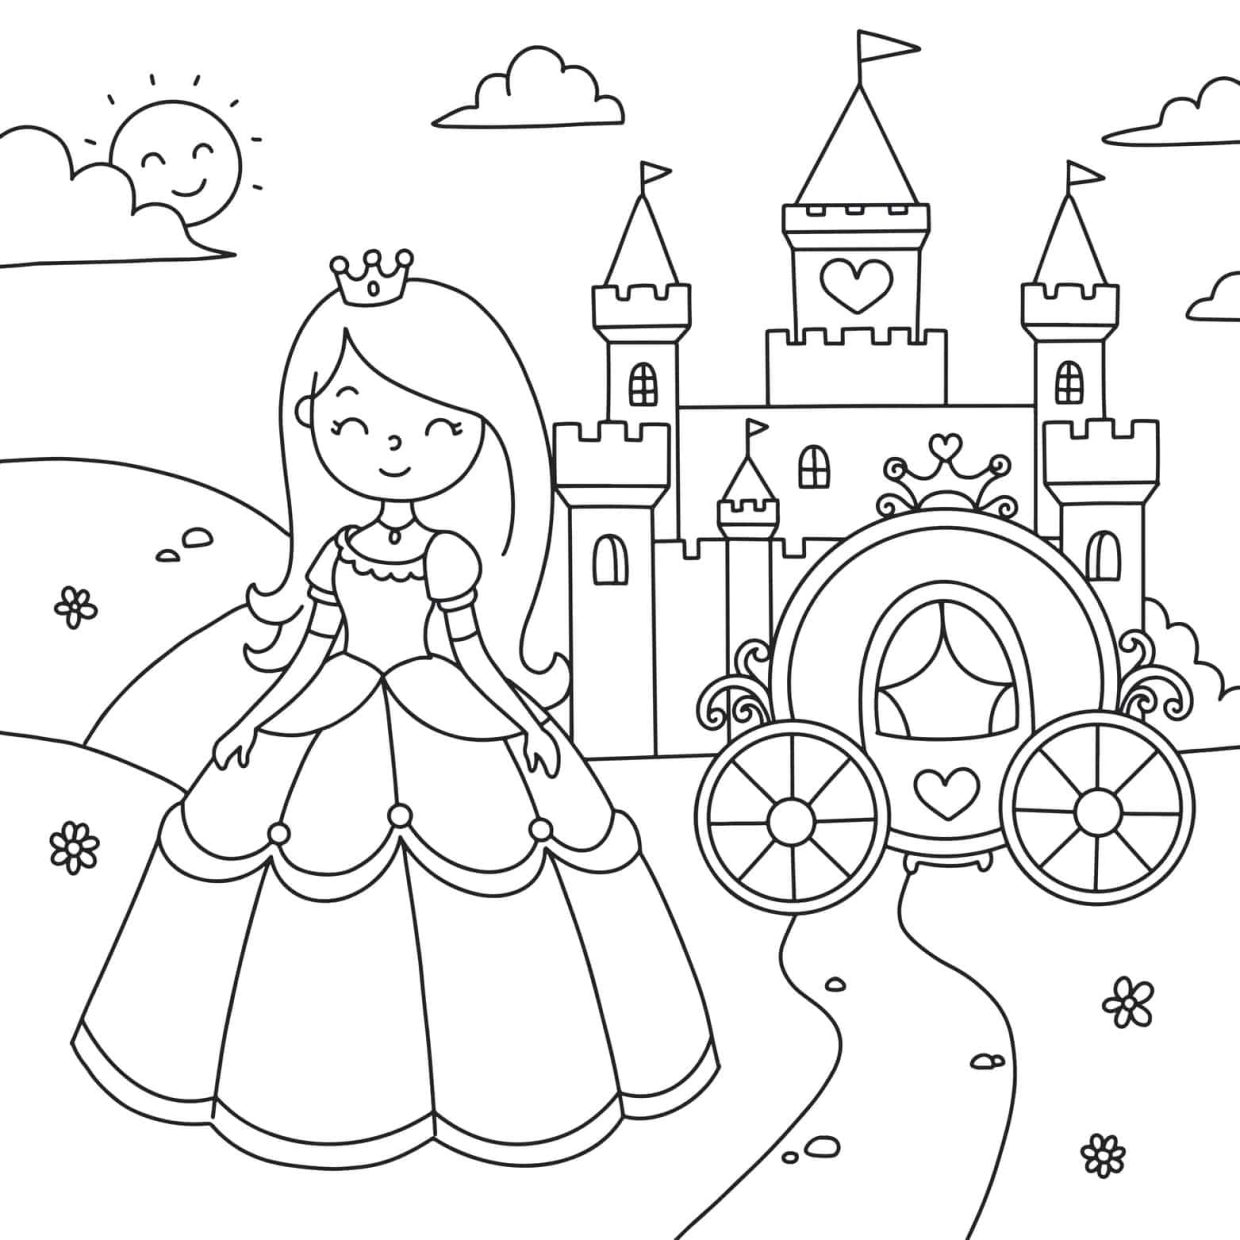 Desenhos de princesas para colorir em preto e branco para crianças